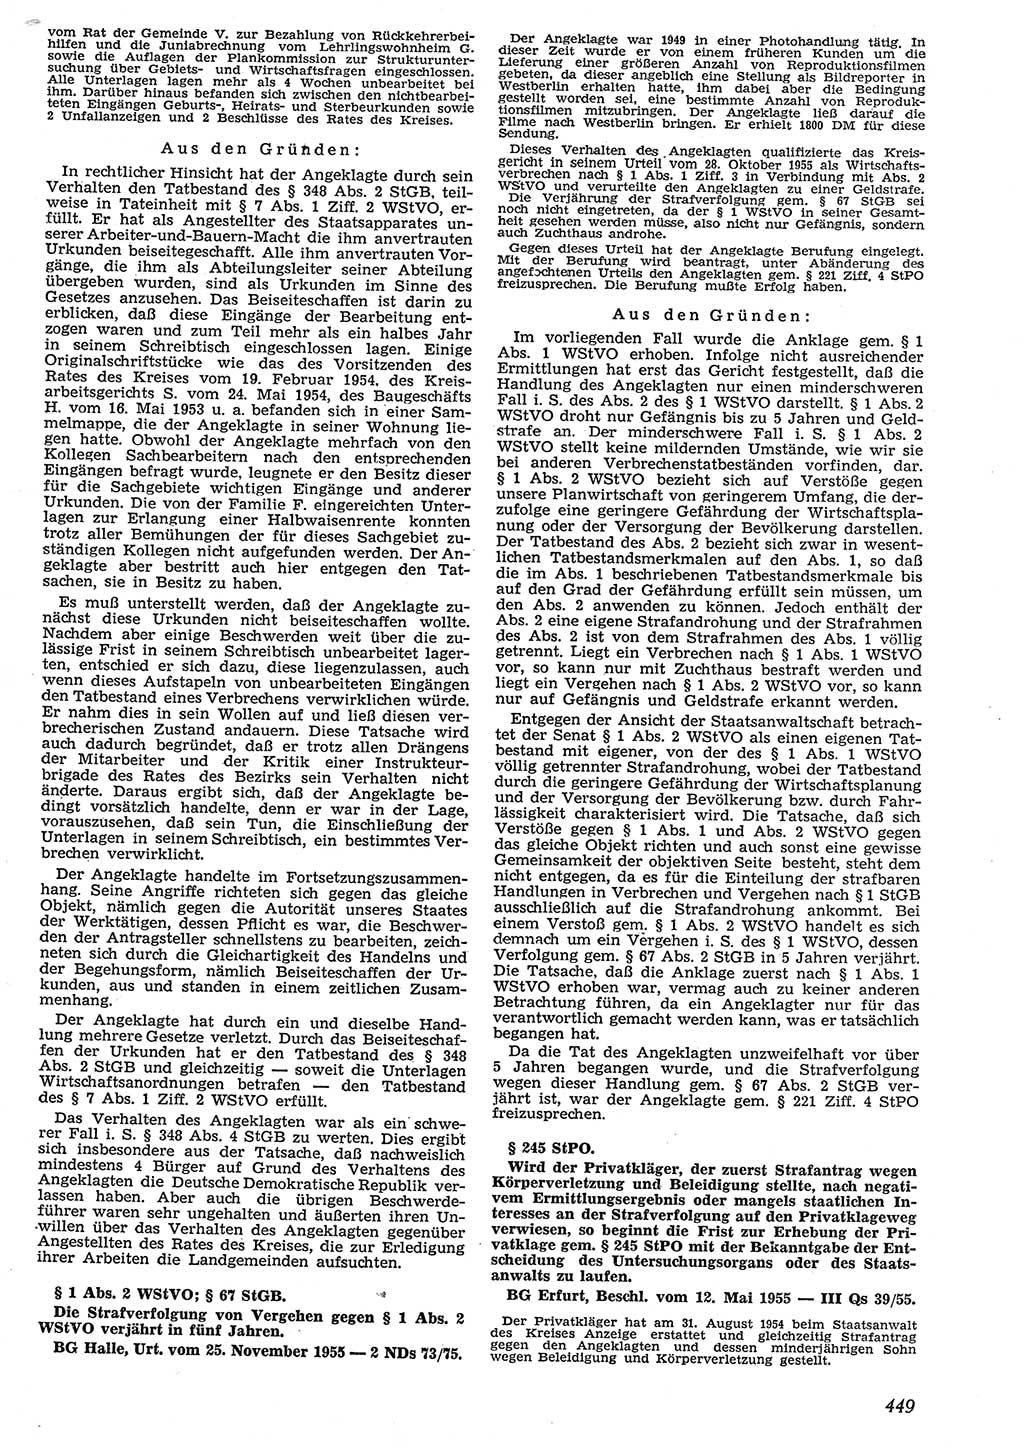 Neue Justiz (NJ), Zeitschrift für Recht und Rechtswissenschaft [Deutsche Demokratische Republik (DDR)], 10. Jahrgang 1956, Seite 449 (NJ DDR 1956, S. 449)